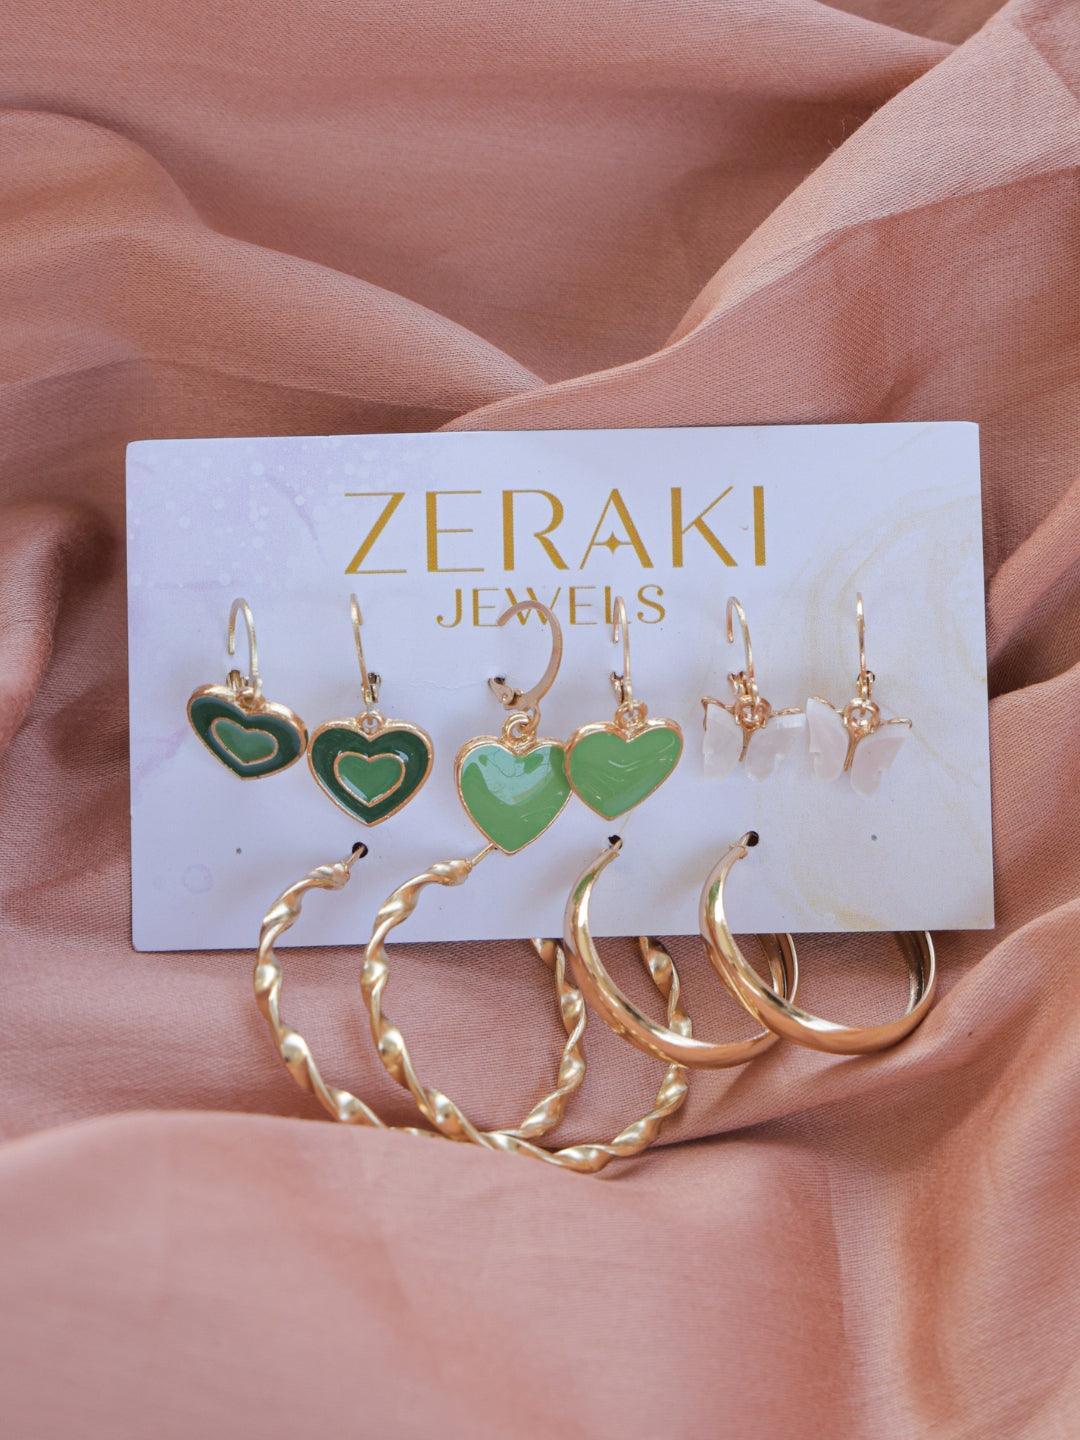 Luxe Adornments Earrings Combo - Zerakijewels